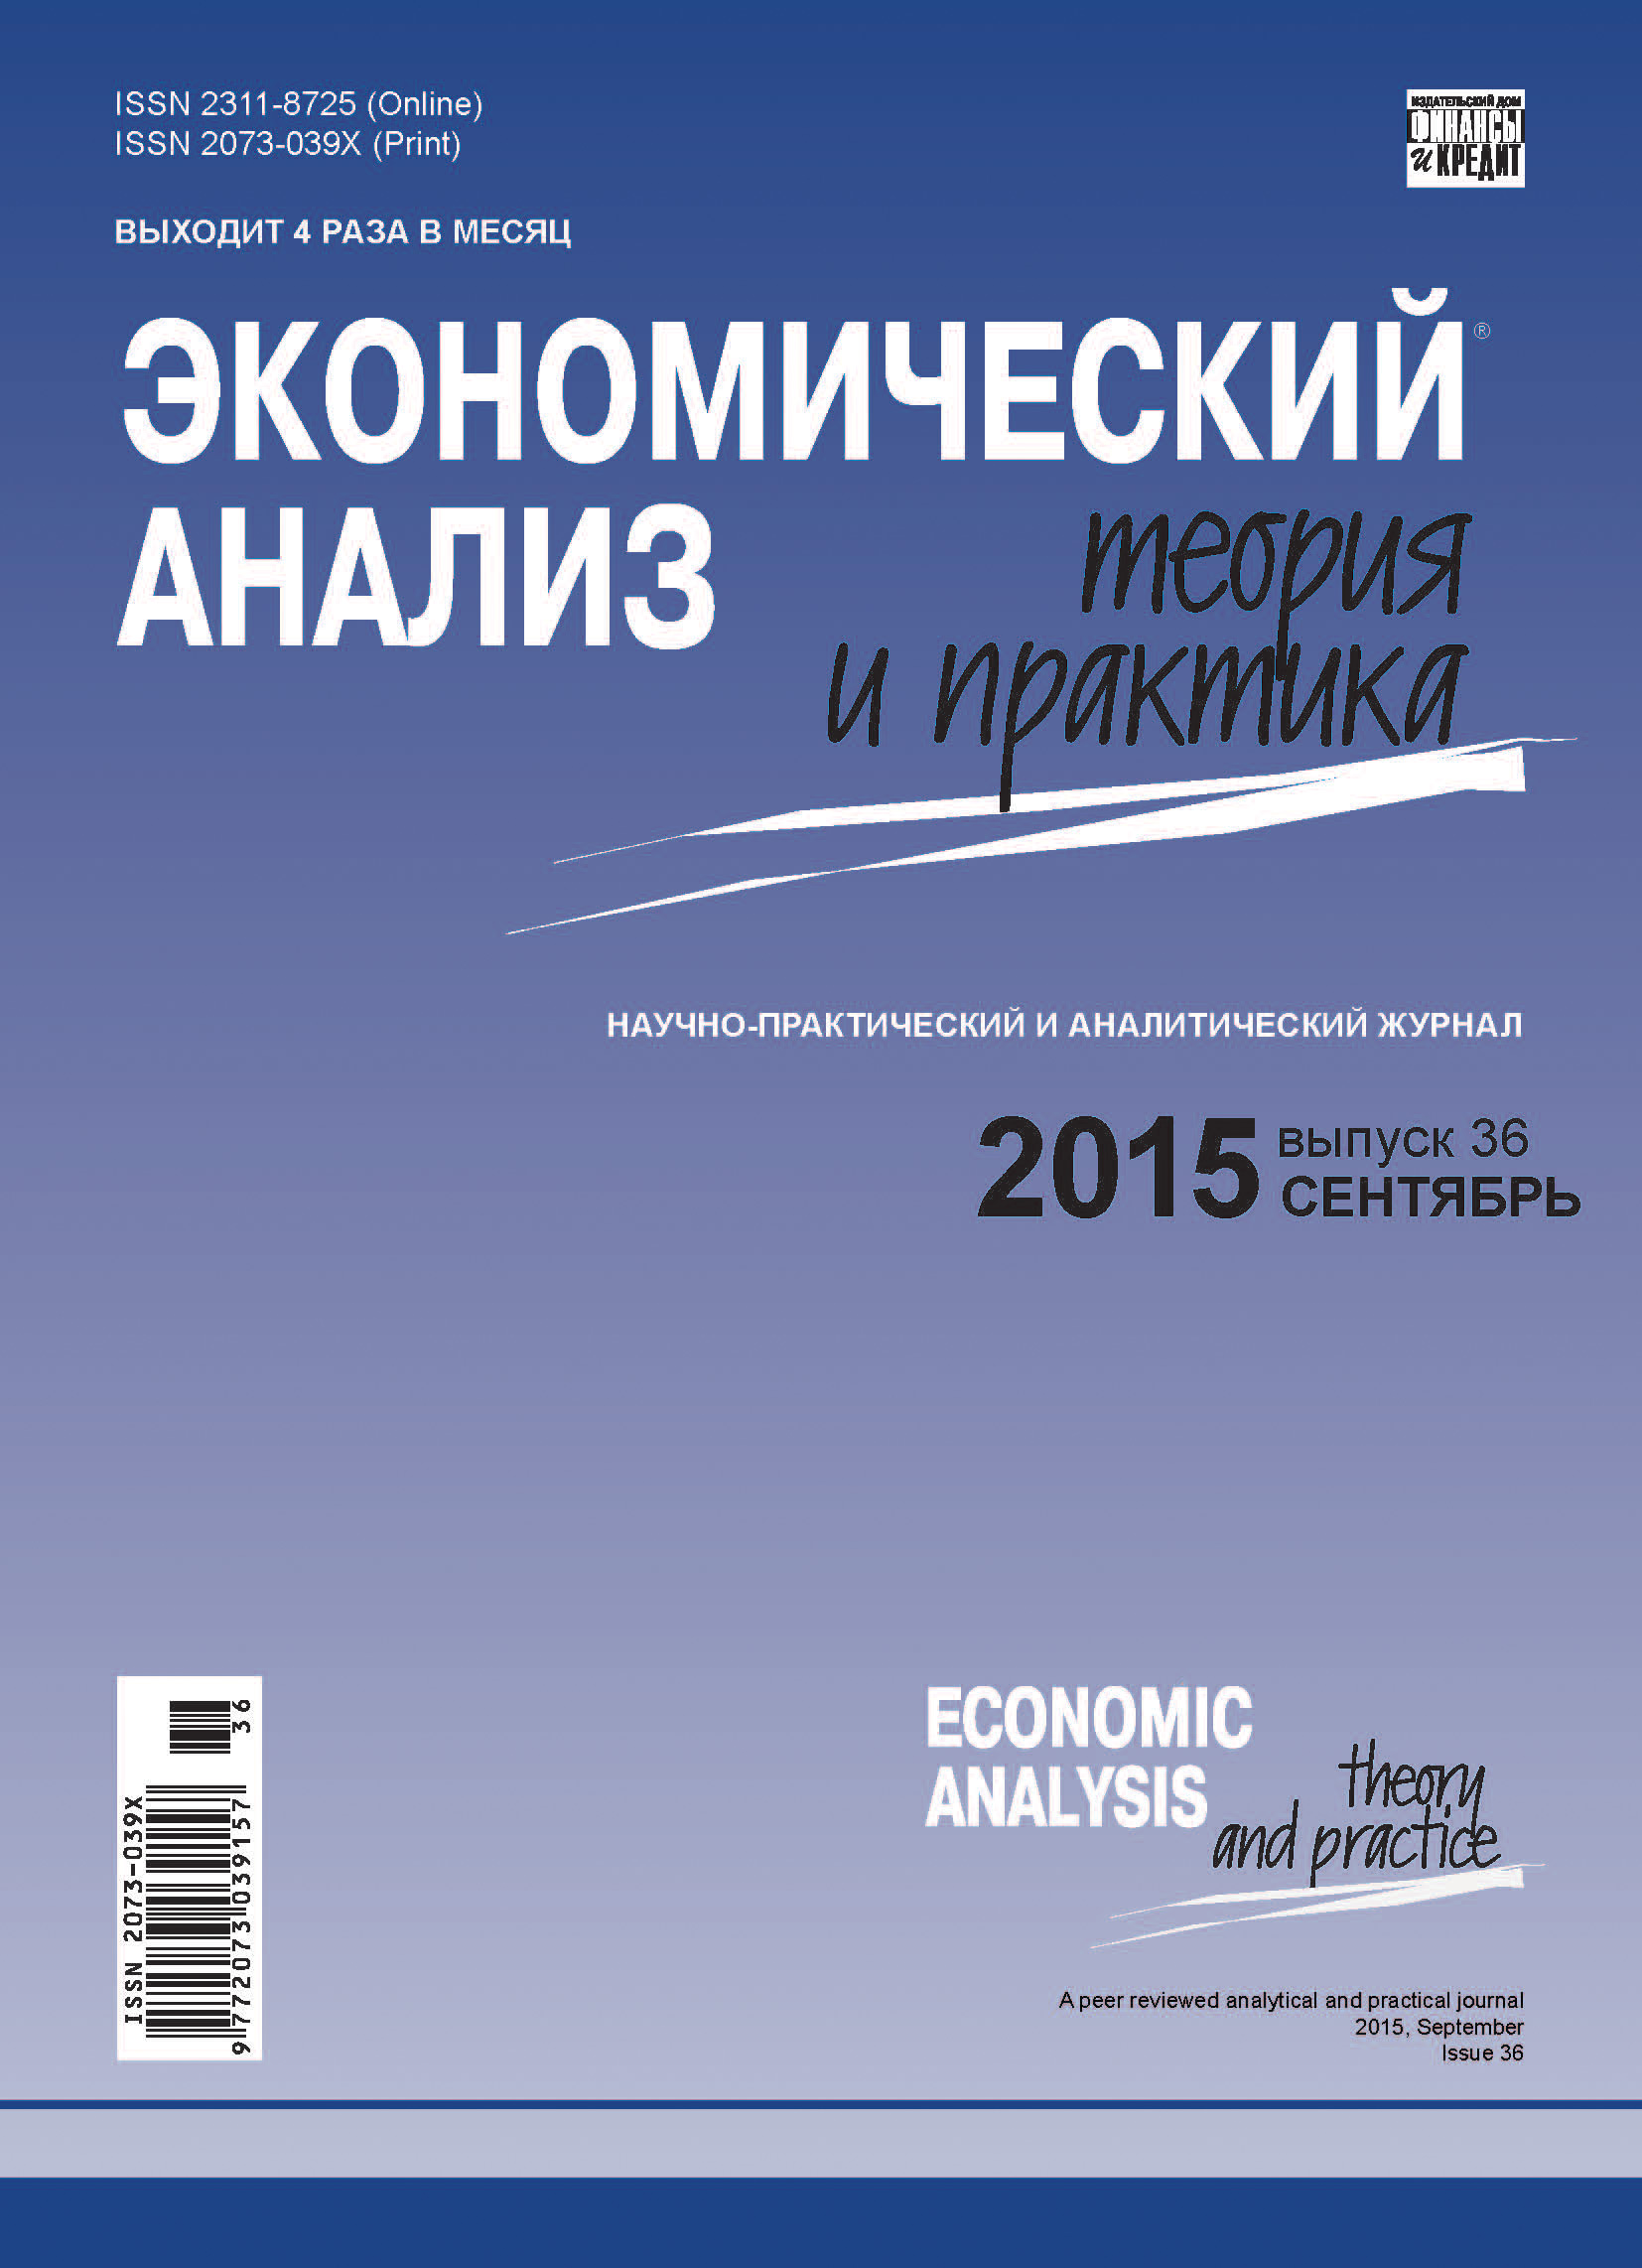 Практика 33 рф. Журналы по экономике. Экономический анализ. Книги по экономическому анализу. Журнал экономика.